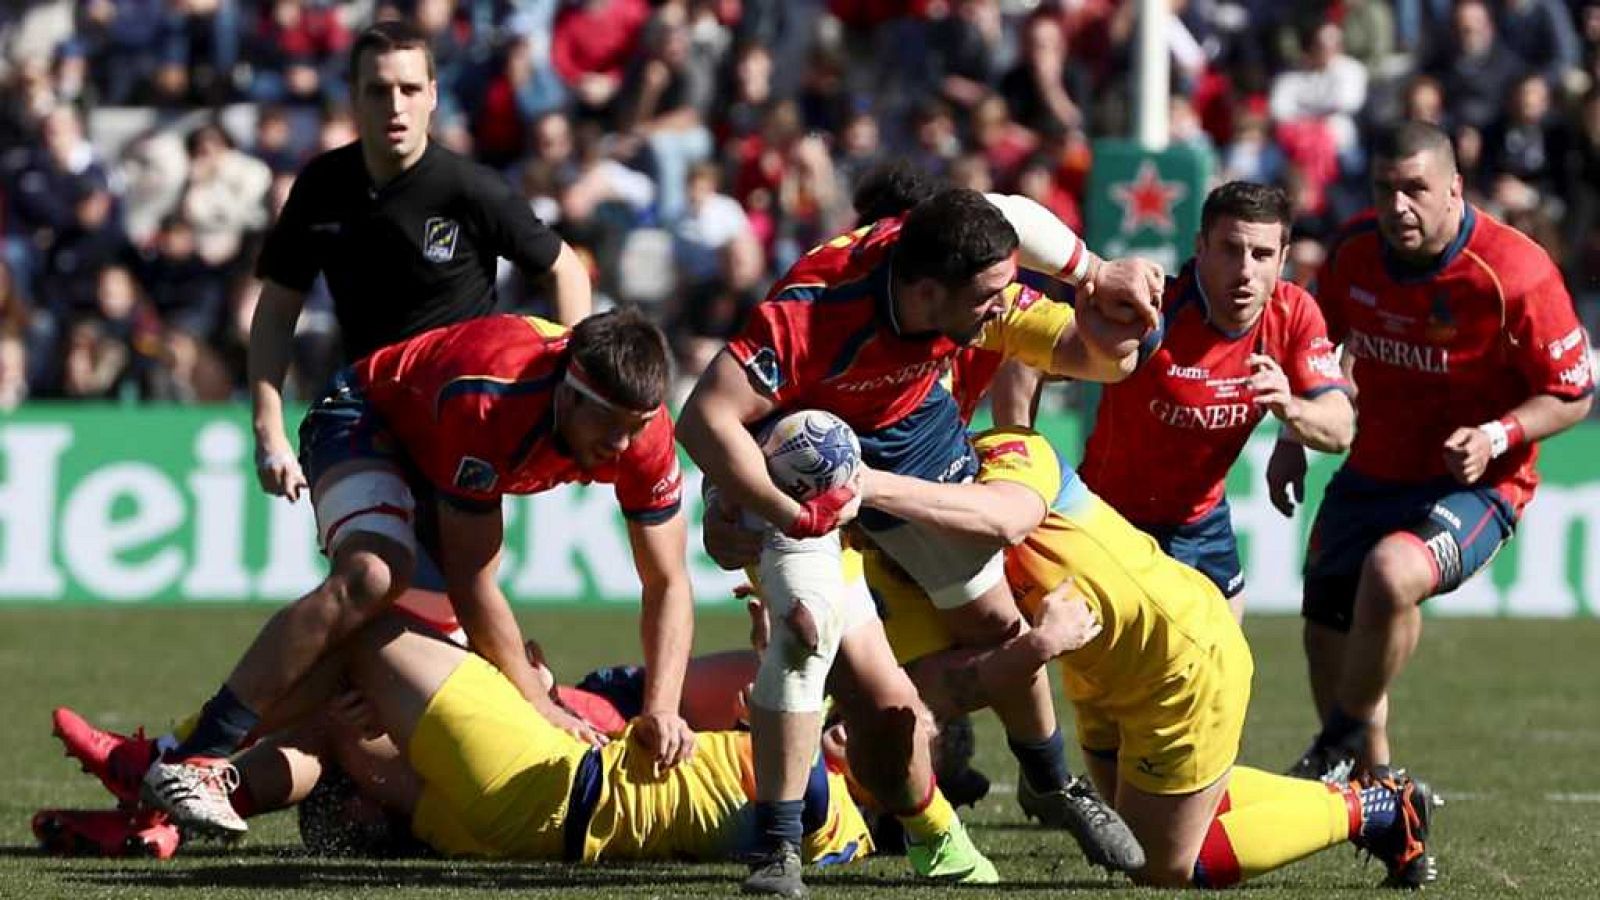 Rugby - España vs. Rumania - Completo